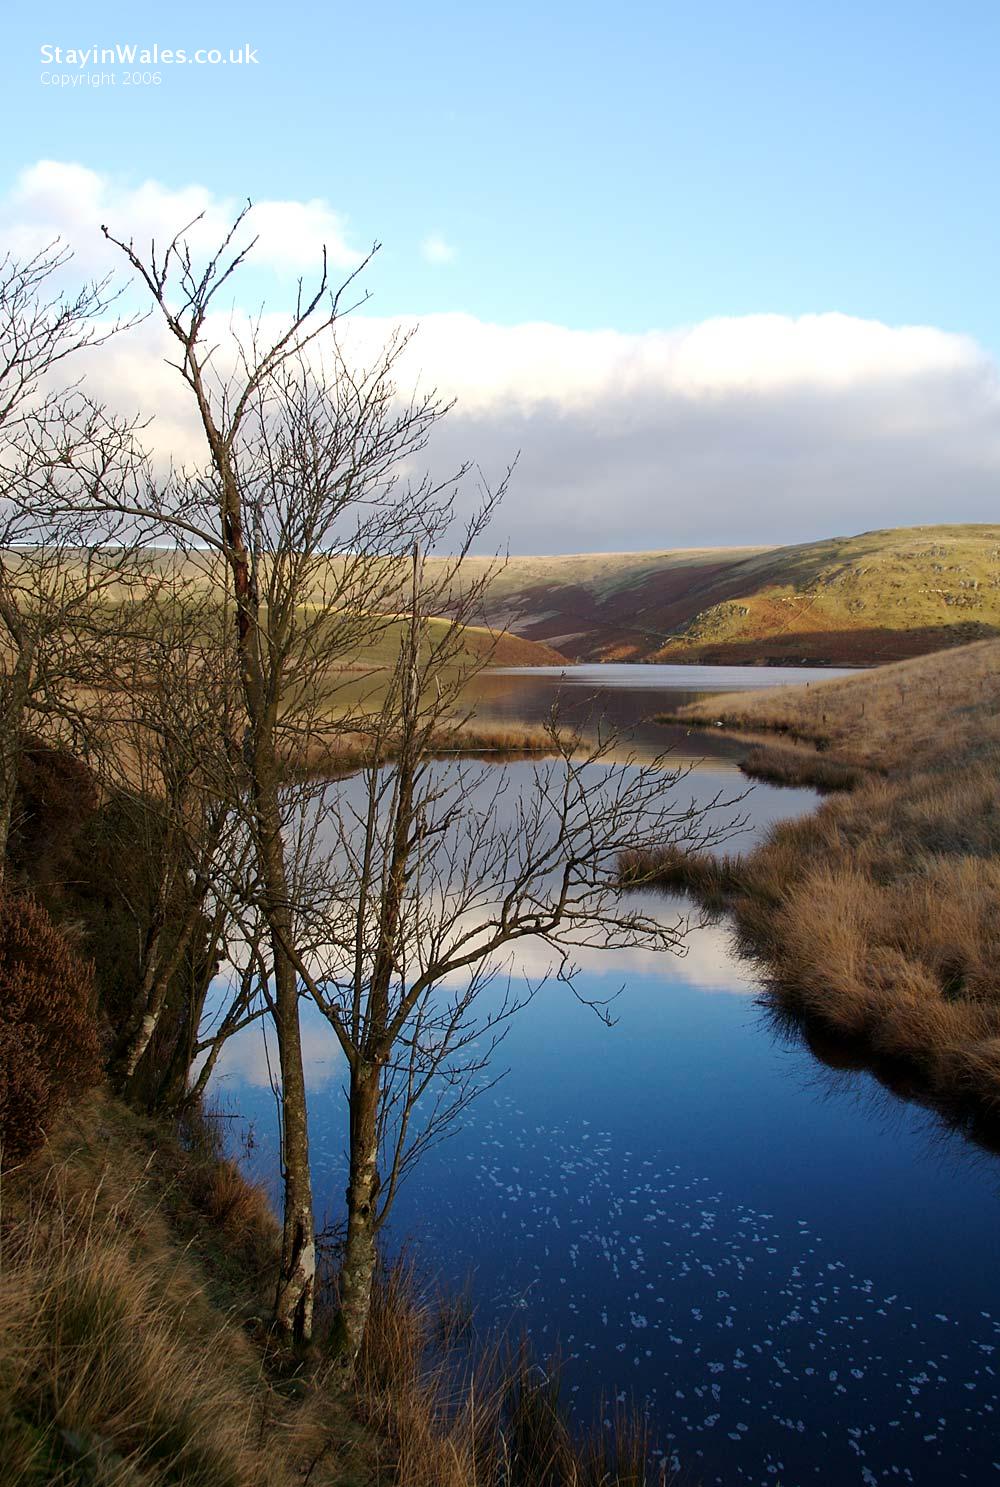 Graig Goch Reservoir, Elan Valley